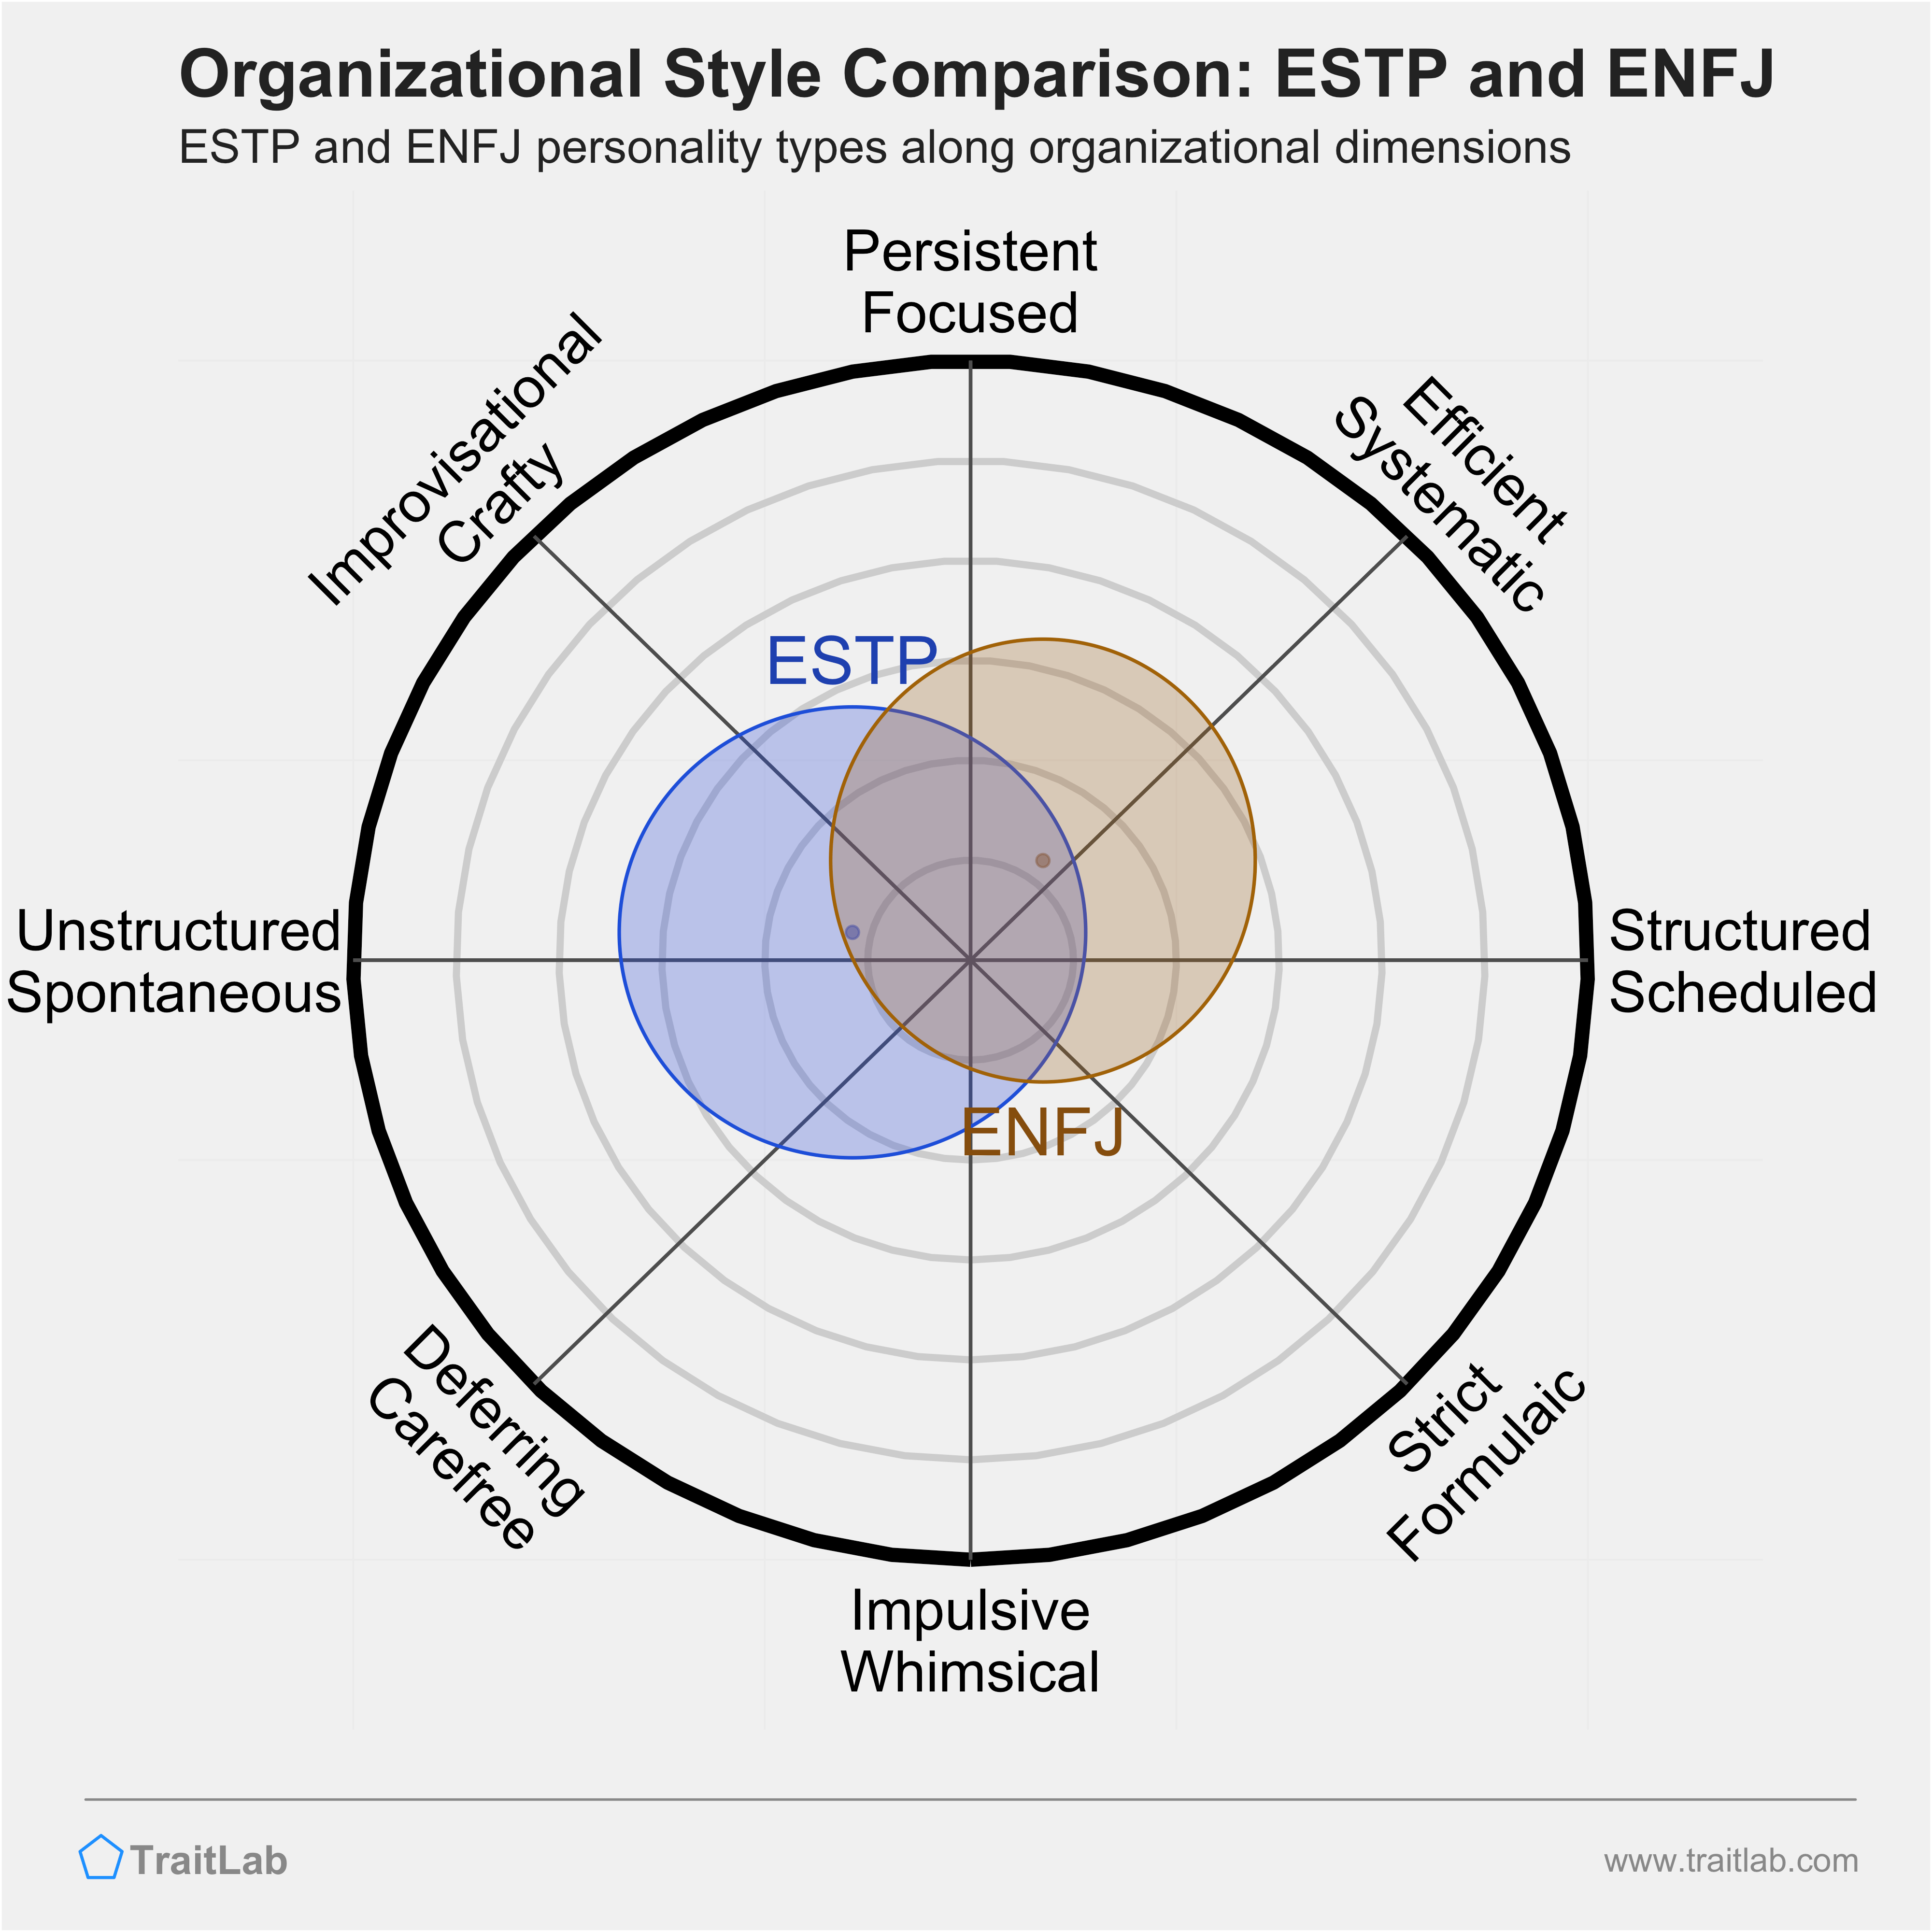 ESTP and ENFJ comparison across organizational dimensions